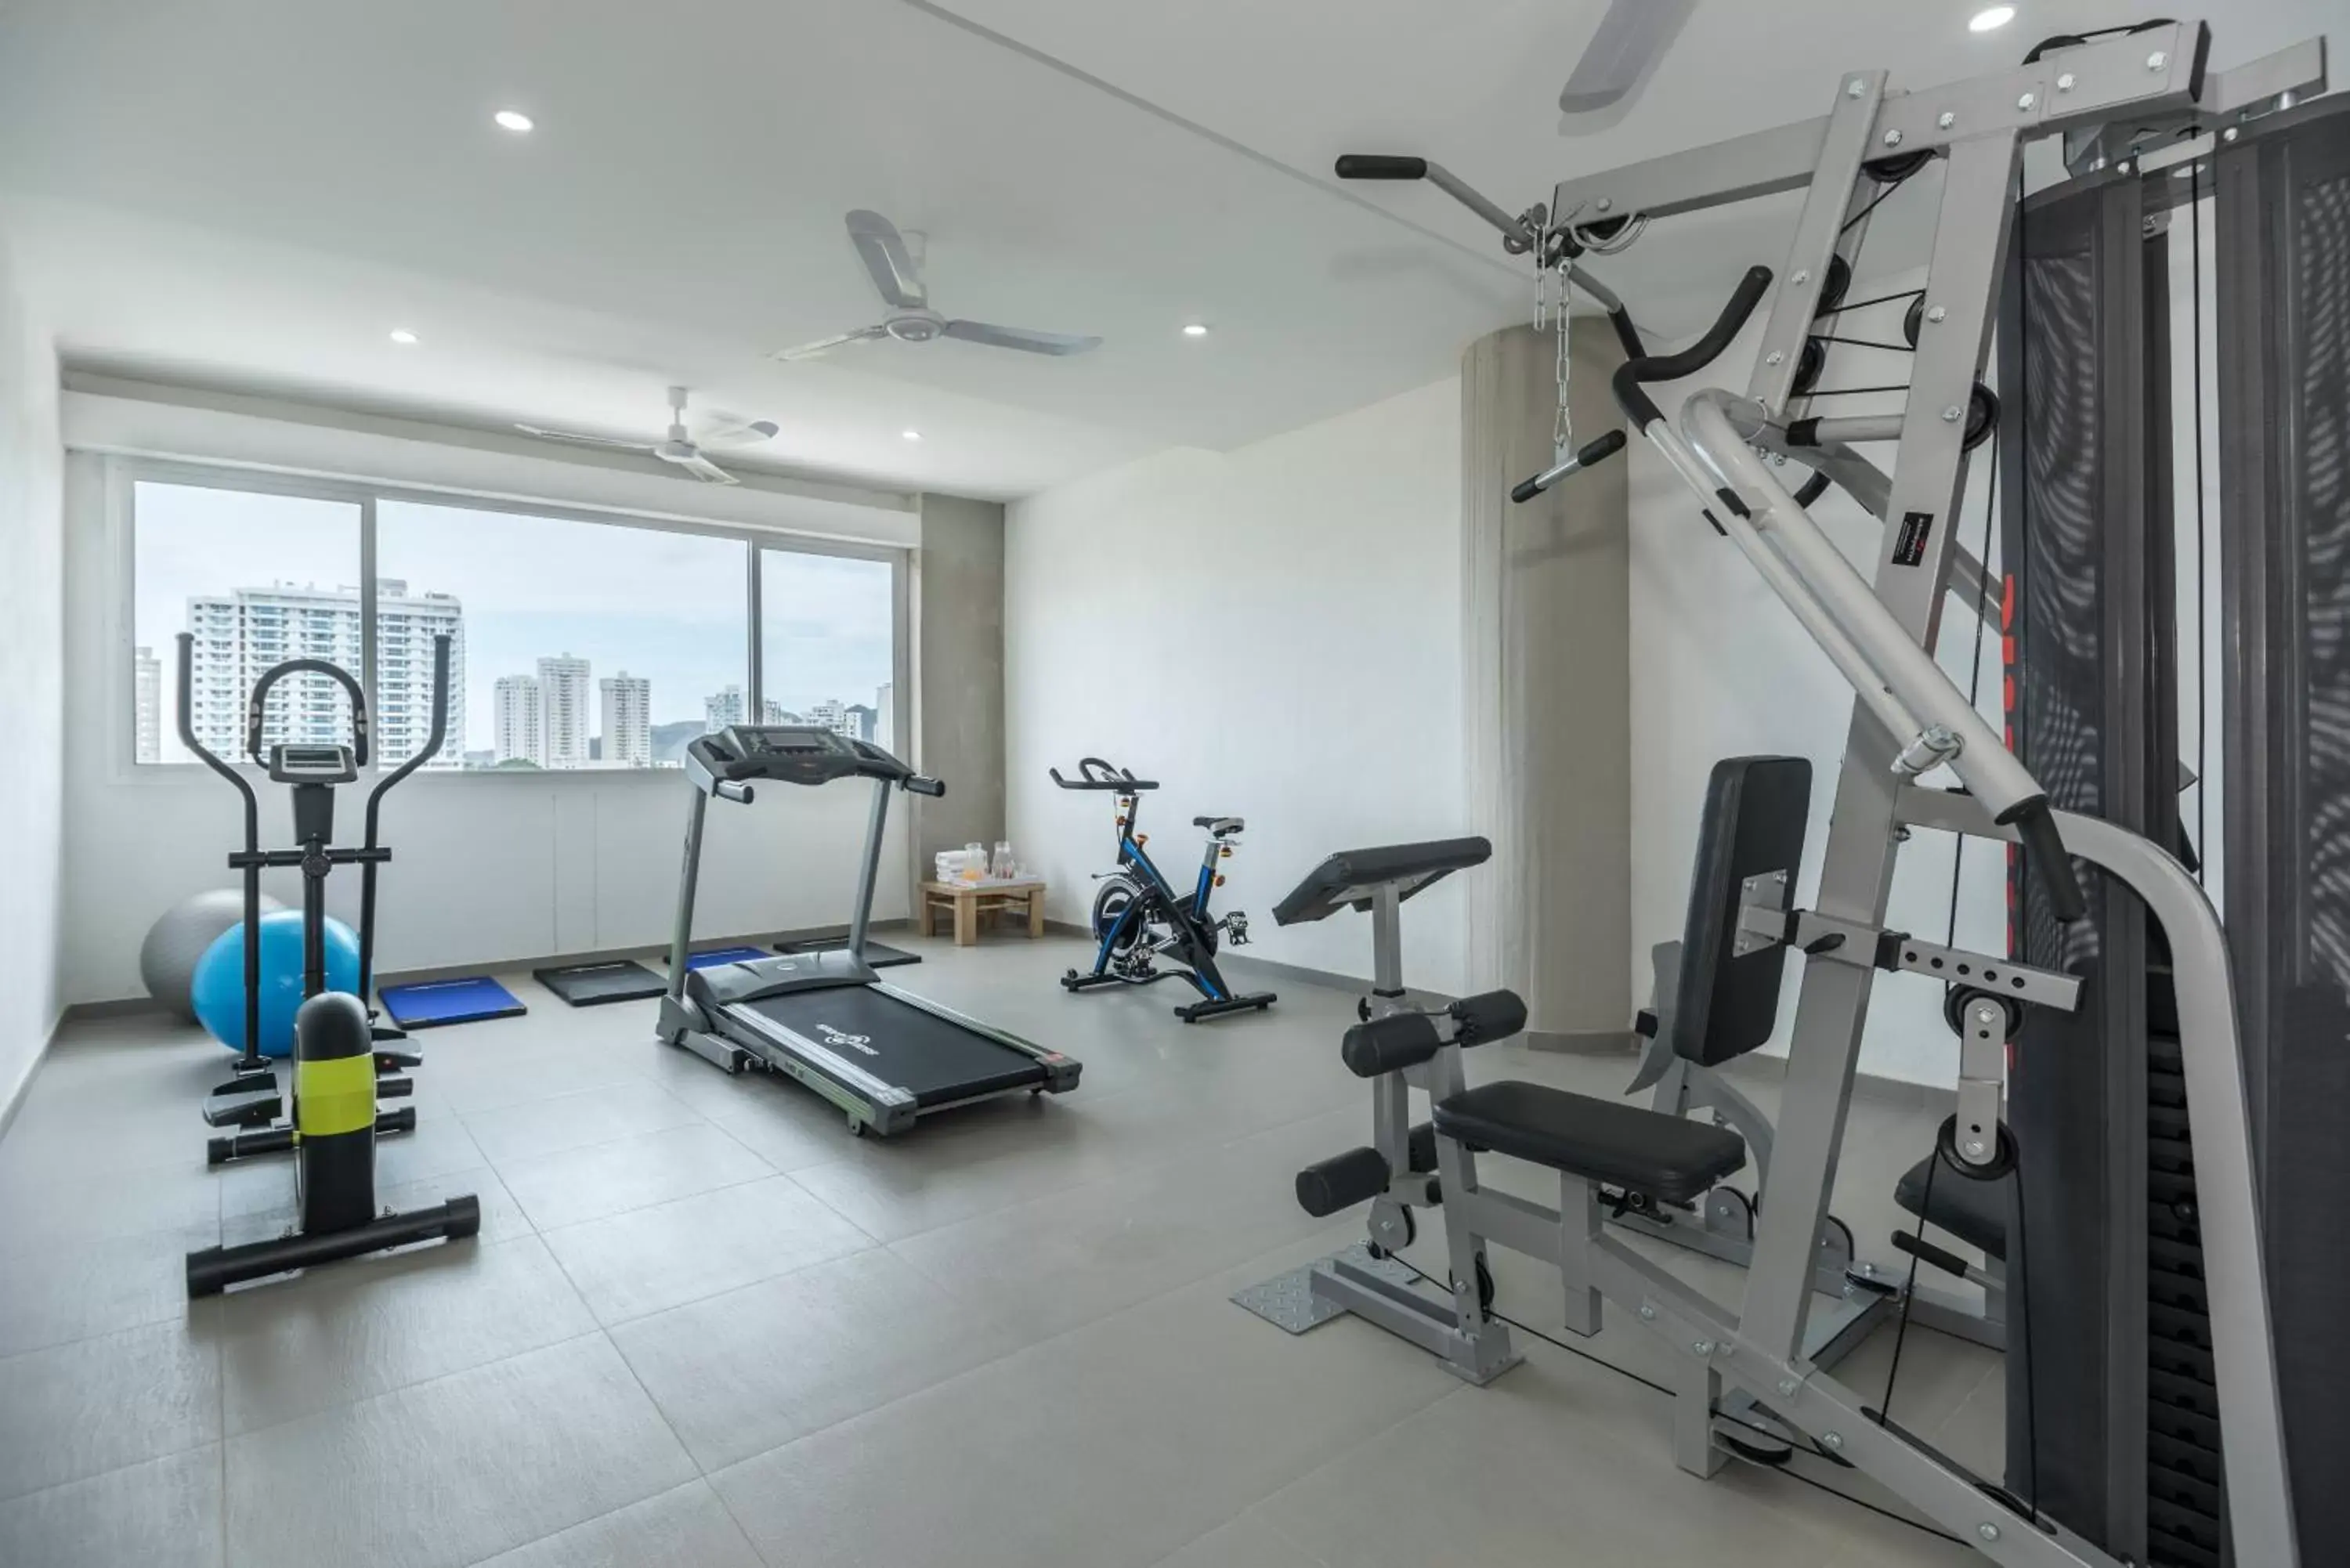 Fitness centre/facilities, Fitness Center/Facilities in Terrazas Tayrona Travelers Apartamentos y Suites